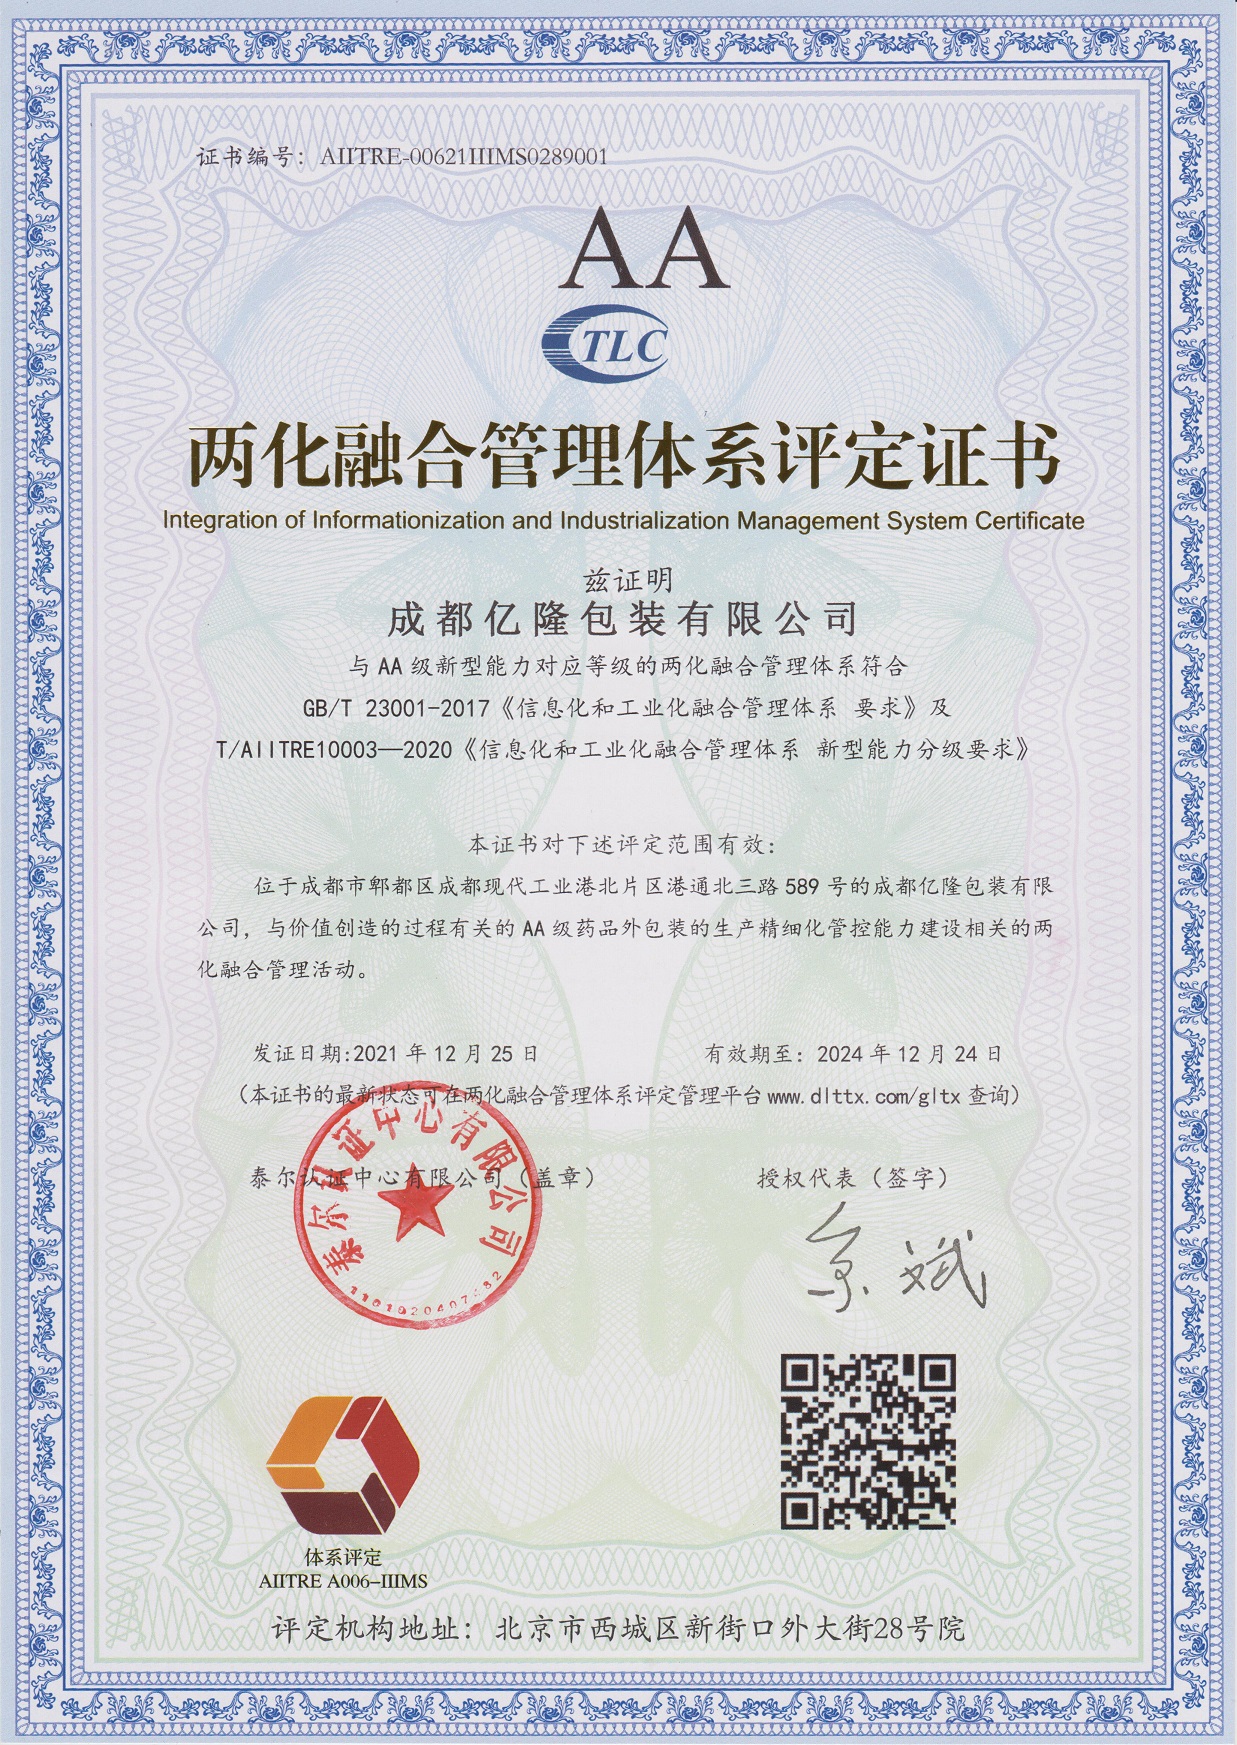 热烈祝贺公司荣获四川省第一家“两化融合管理体系AA证书”